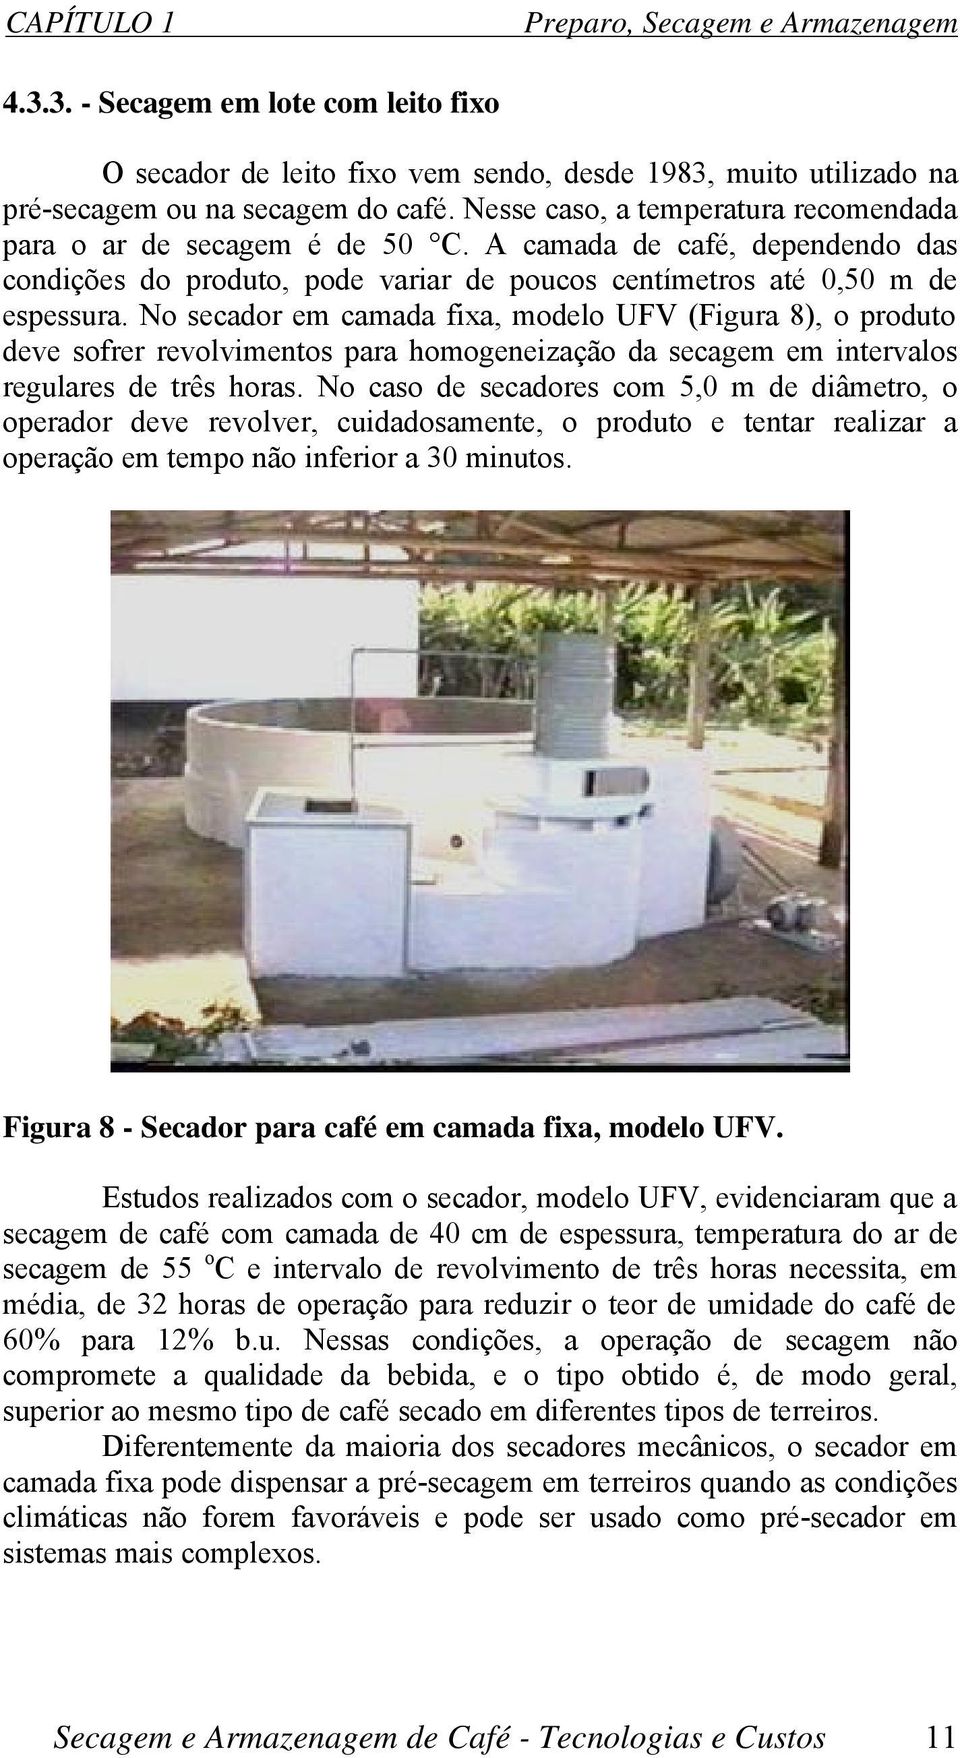 No secador em camada fixa, modelo UFV (Figura 8), o produto deve sofrer revolvimentos para homogeneização da secagem em intervalos regulares de três horas.